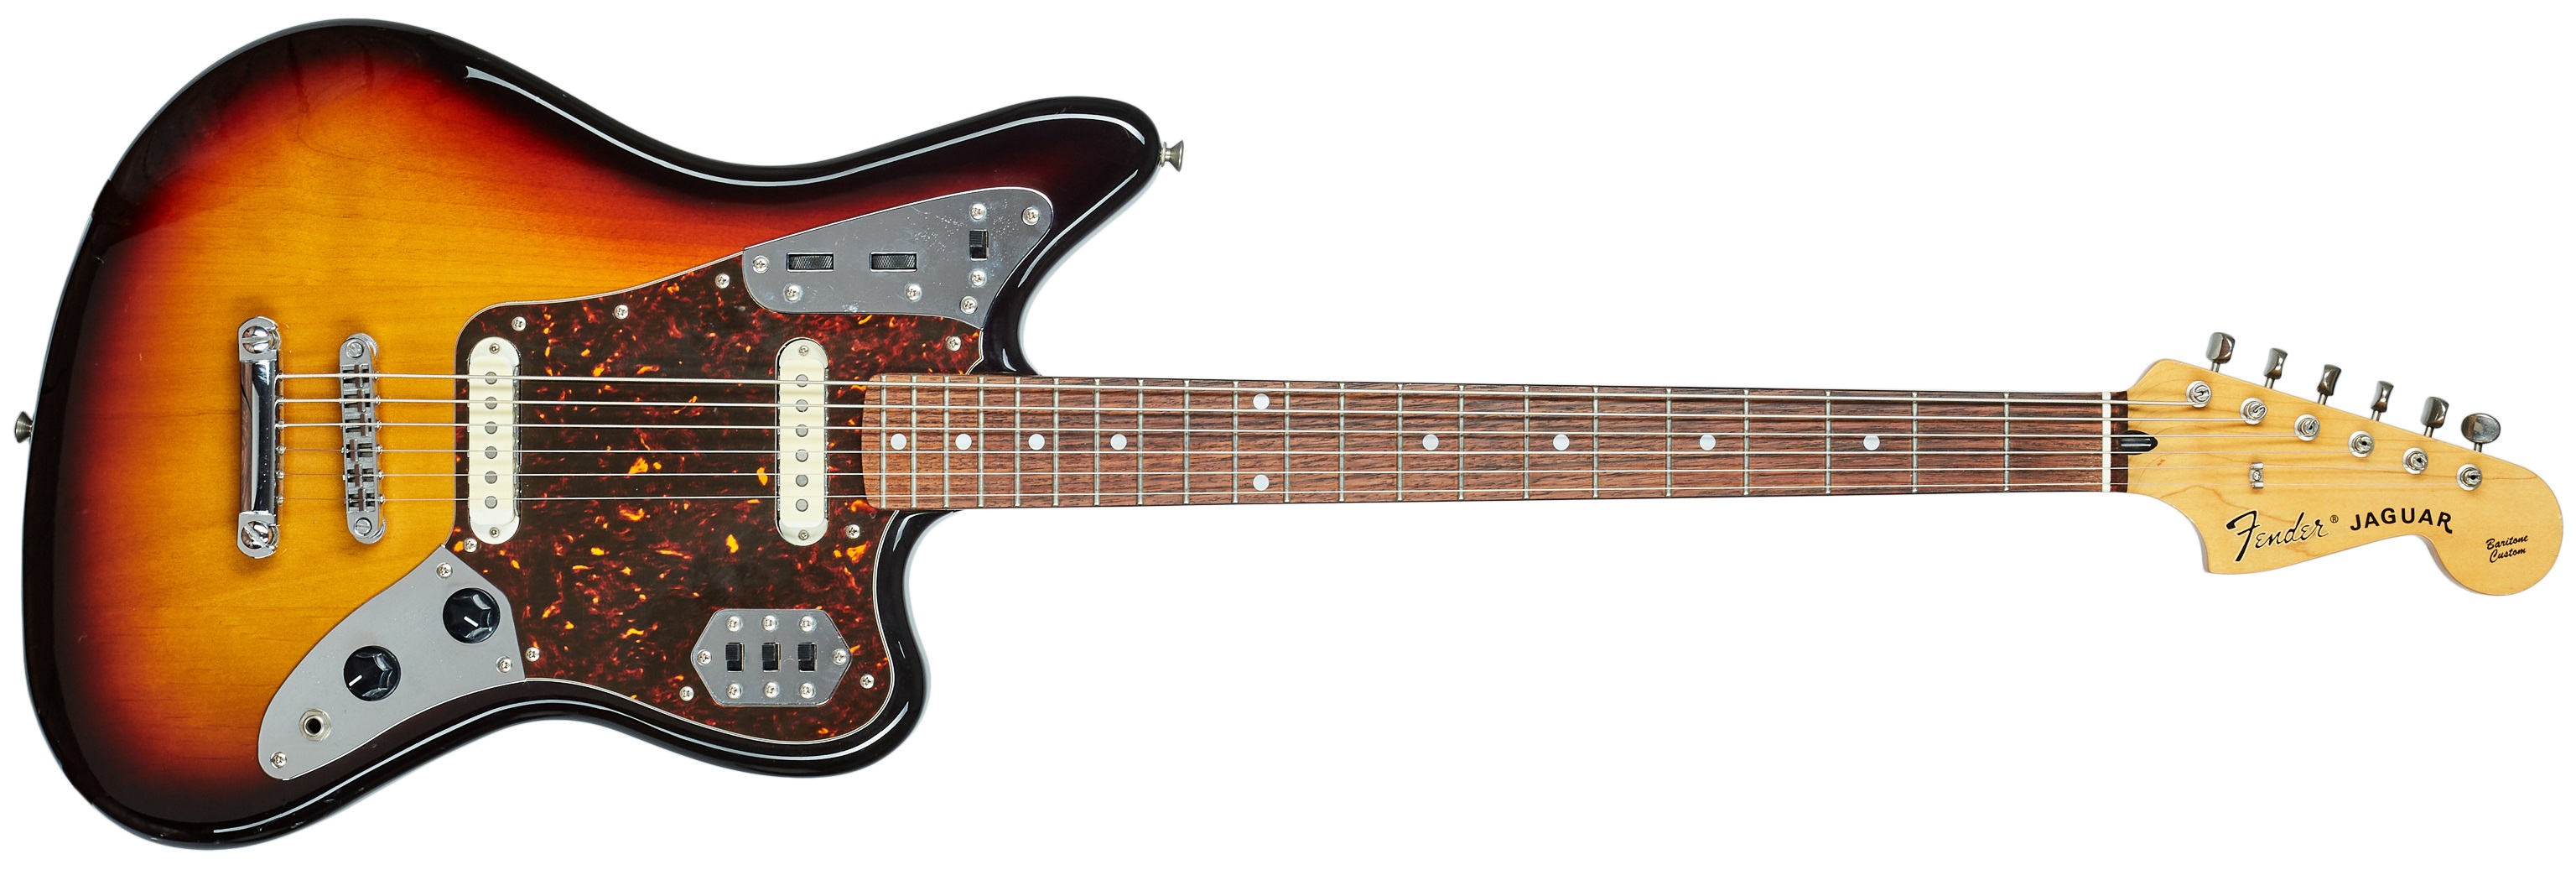 Fender 2006 Jaguar Baritone Custom CIJ